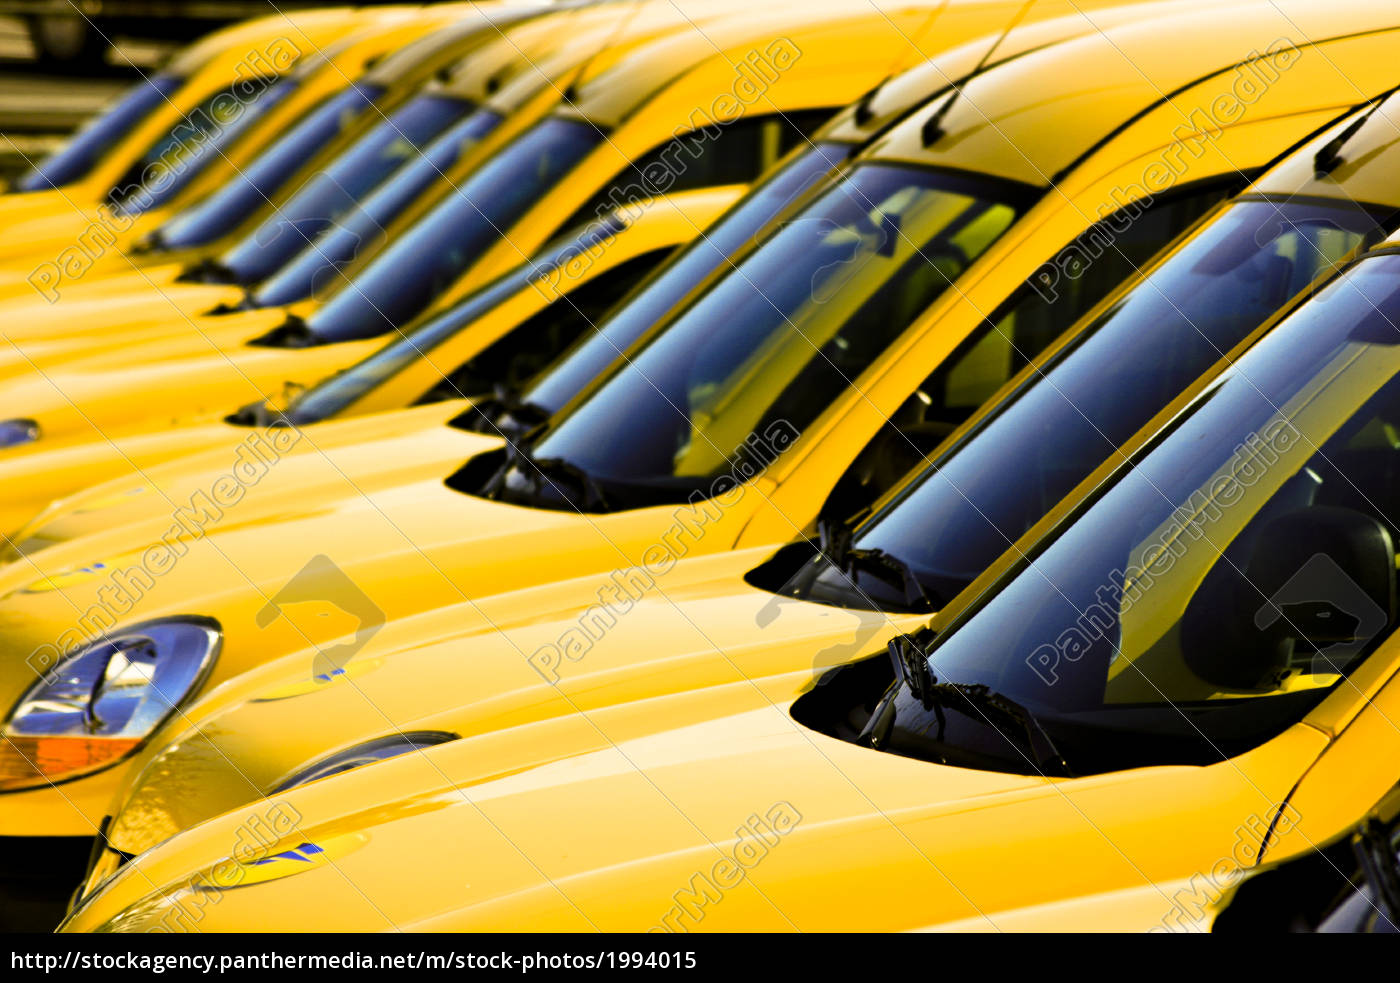 gelbe autos - Lizenzfreies Bild #1994015